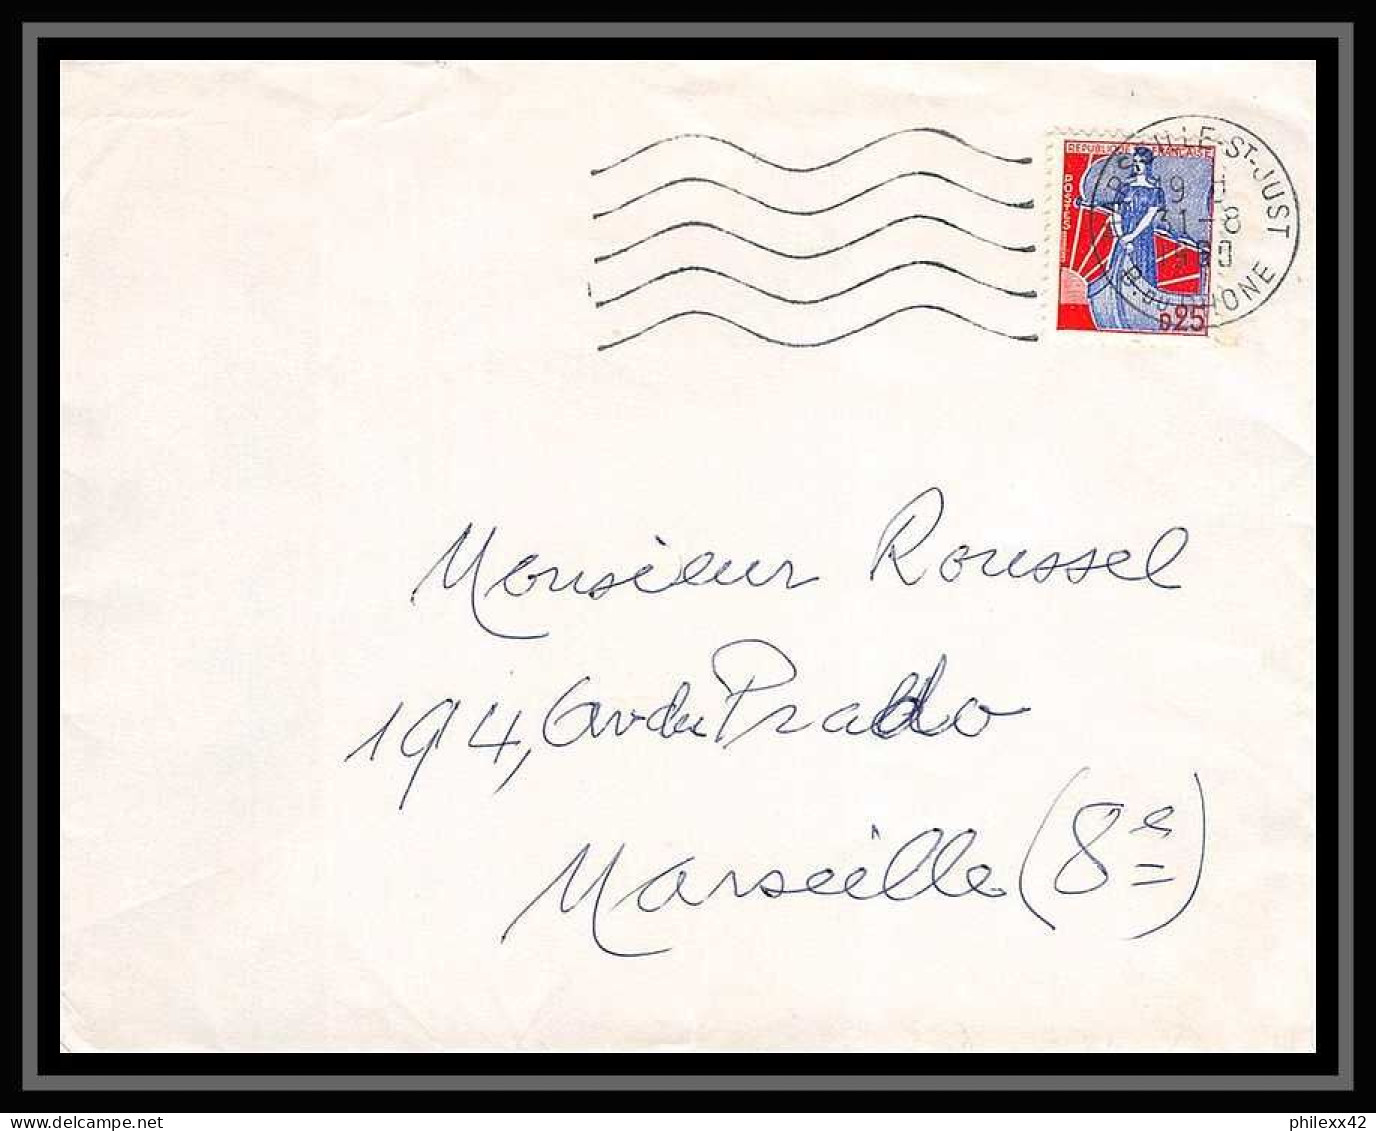 116985 lot de 8 Lettres Bouches du rhone Marseille saint Just